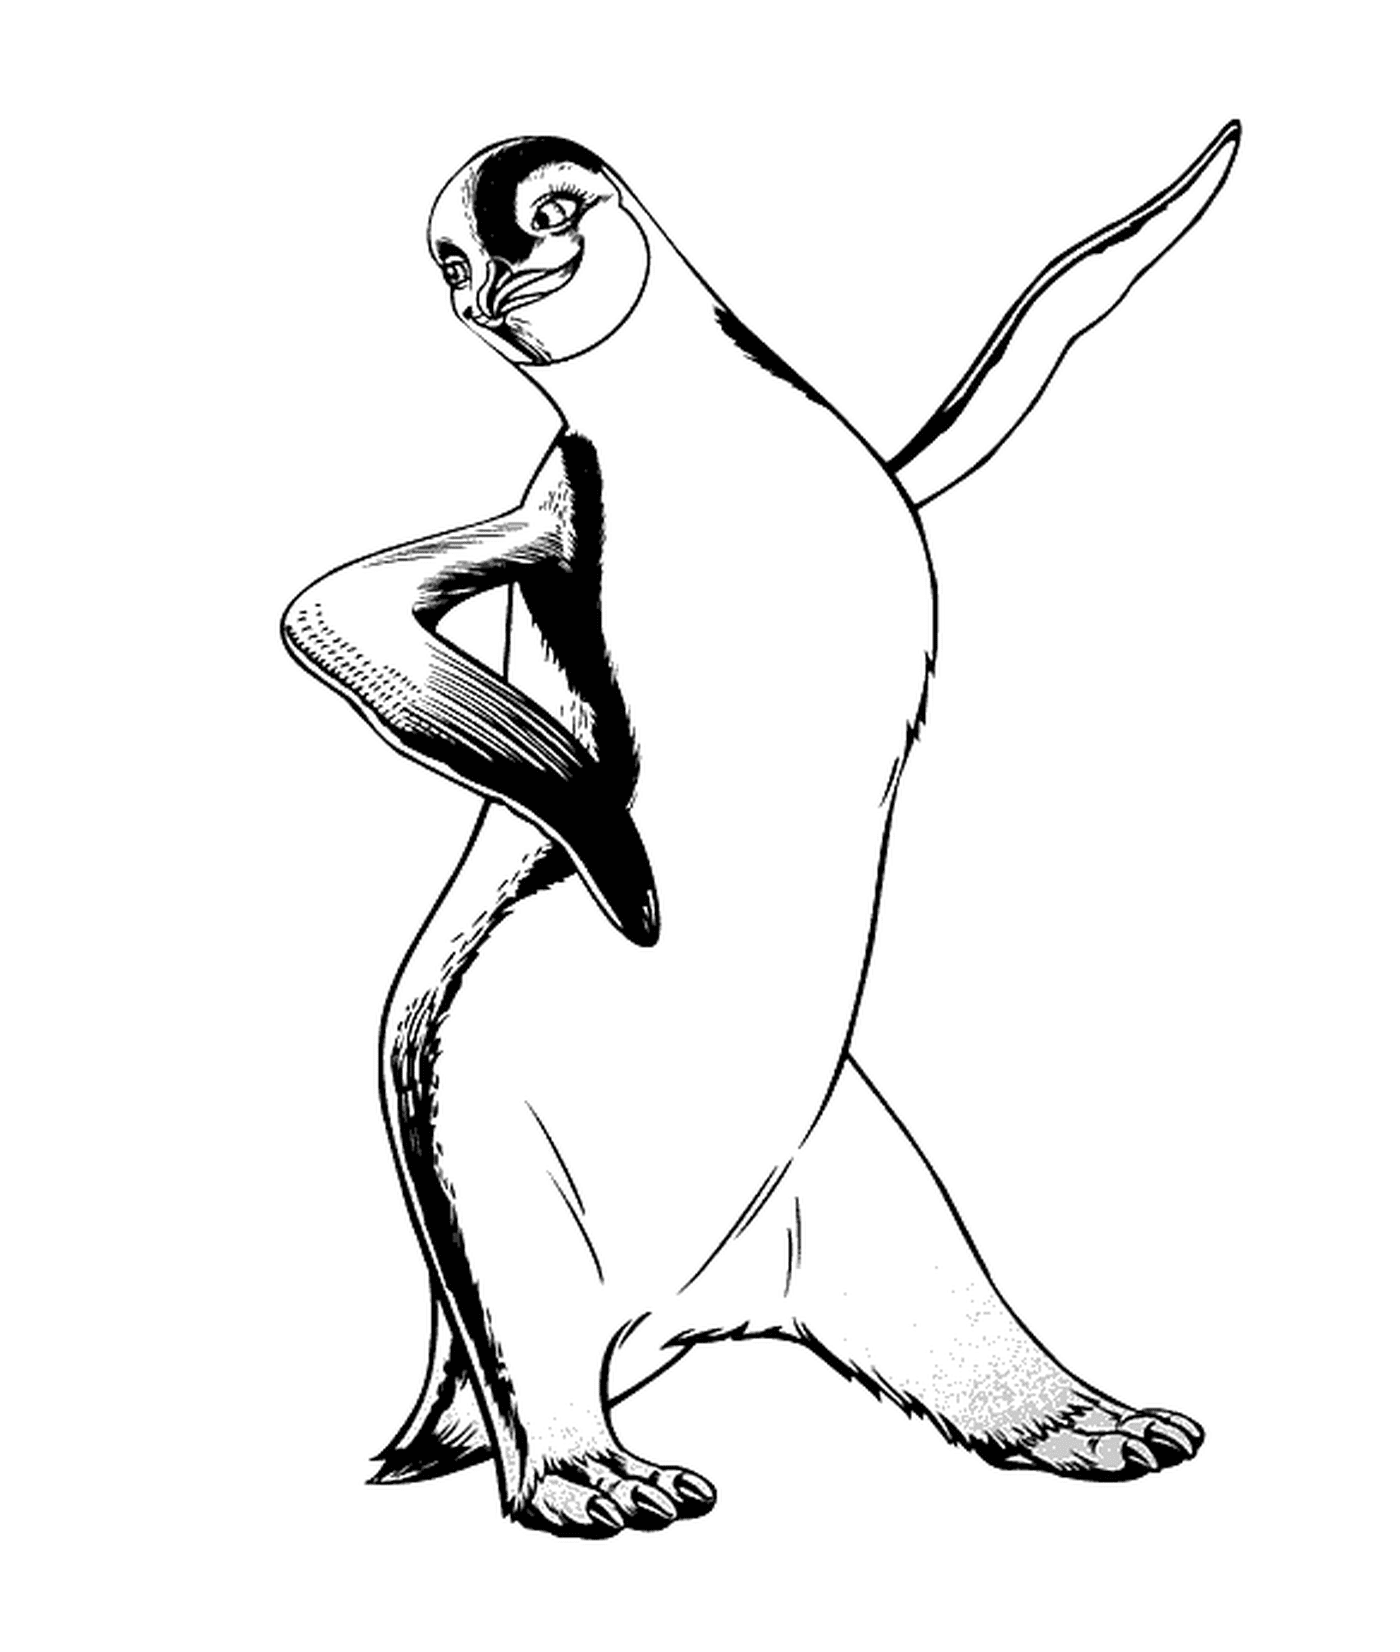  企鹅热情跳舞 